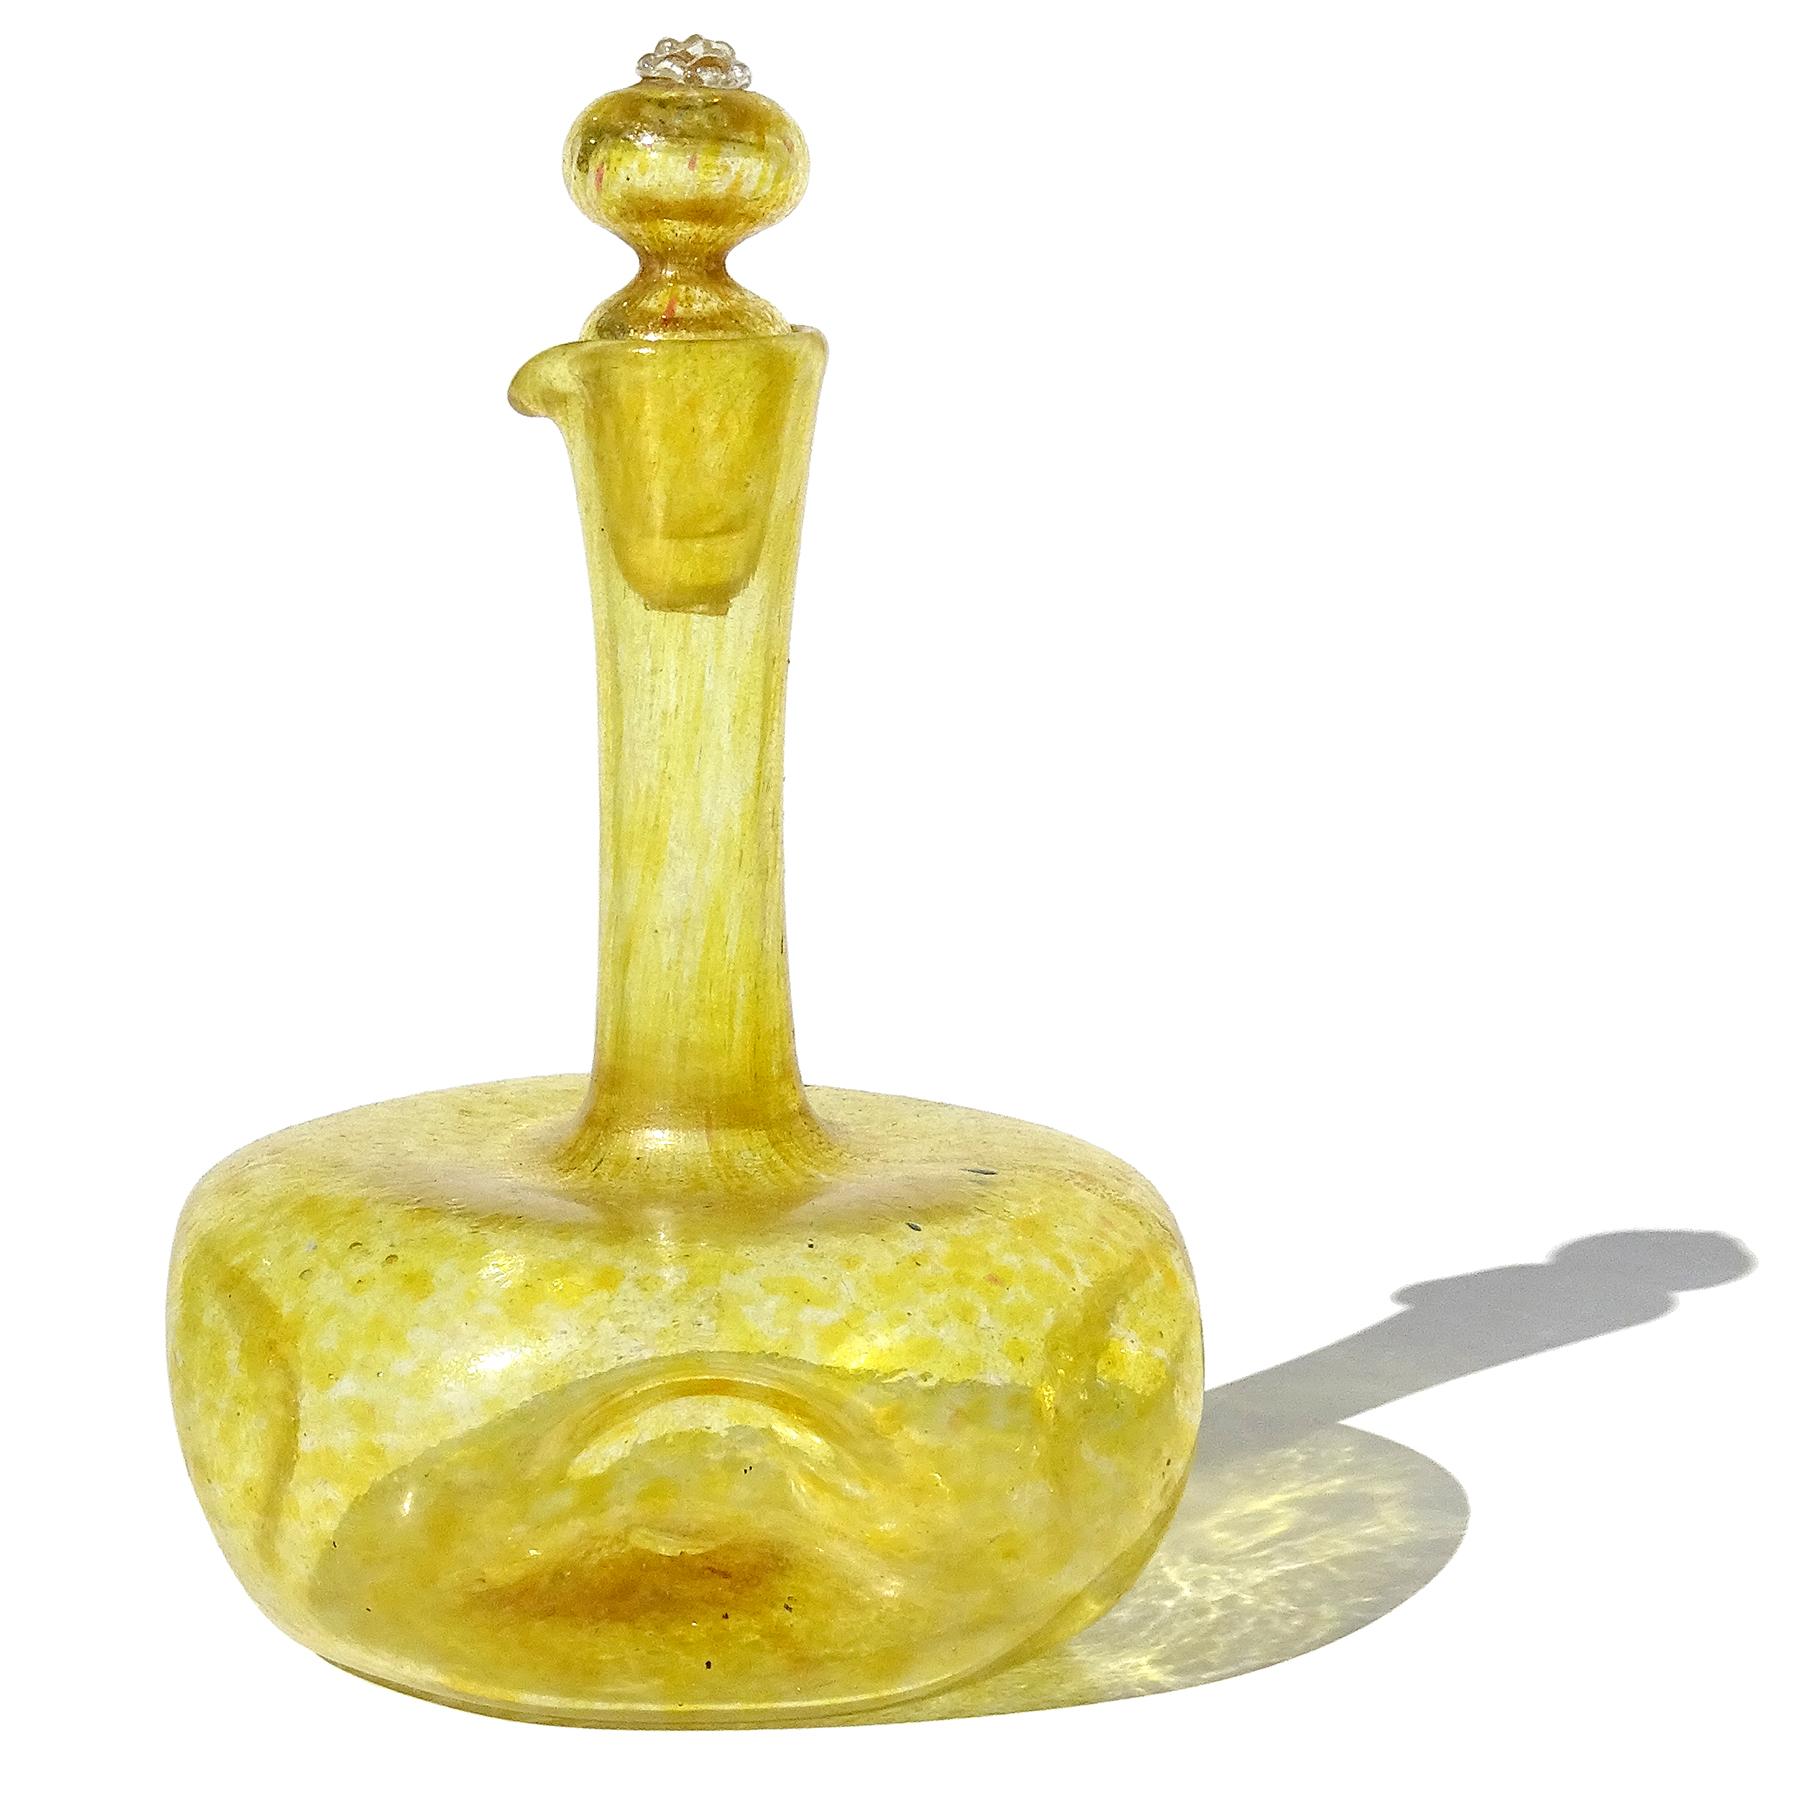 Magnifique burette en verre d'art italien soufflé à la main, jaune et mouchetures d'or, avec bouchon d'origine. Attribué à la serre de la Compagnia Di Venezia E Murano (C.V.M.). La bouteille a une forme arrondie, mais elle est alvéolée de chaque